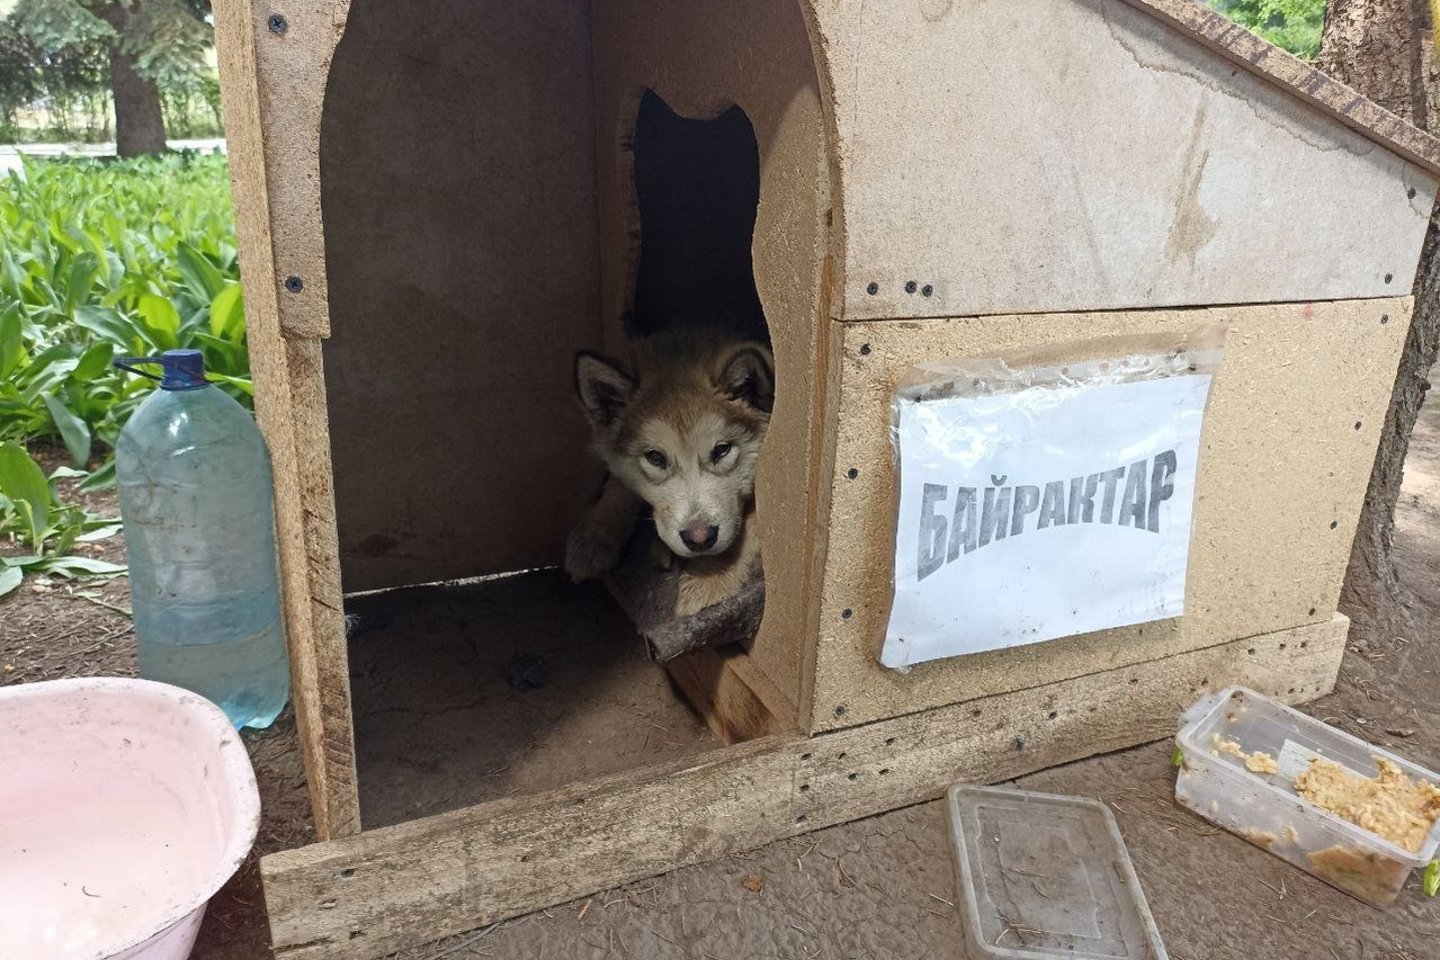  Išgelbėtas šuo liko pas ugniagesius. Jam buvo suteiktas vardas „Bayraktar“.<br> Ukrainos valstybinės pagalbos tarnybos nuotr.